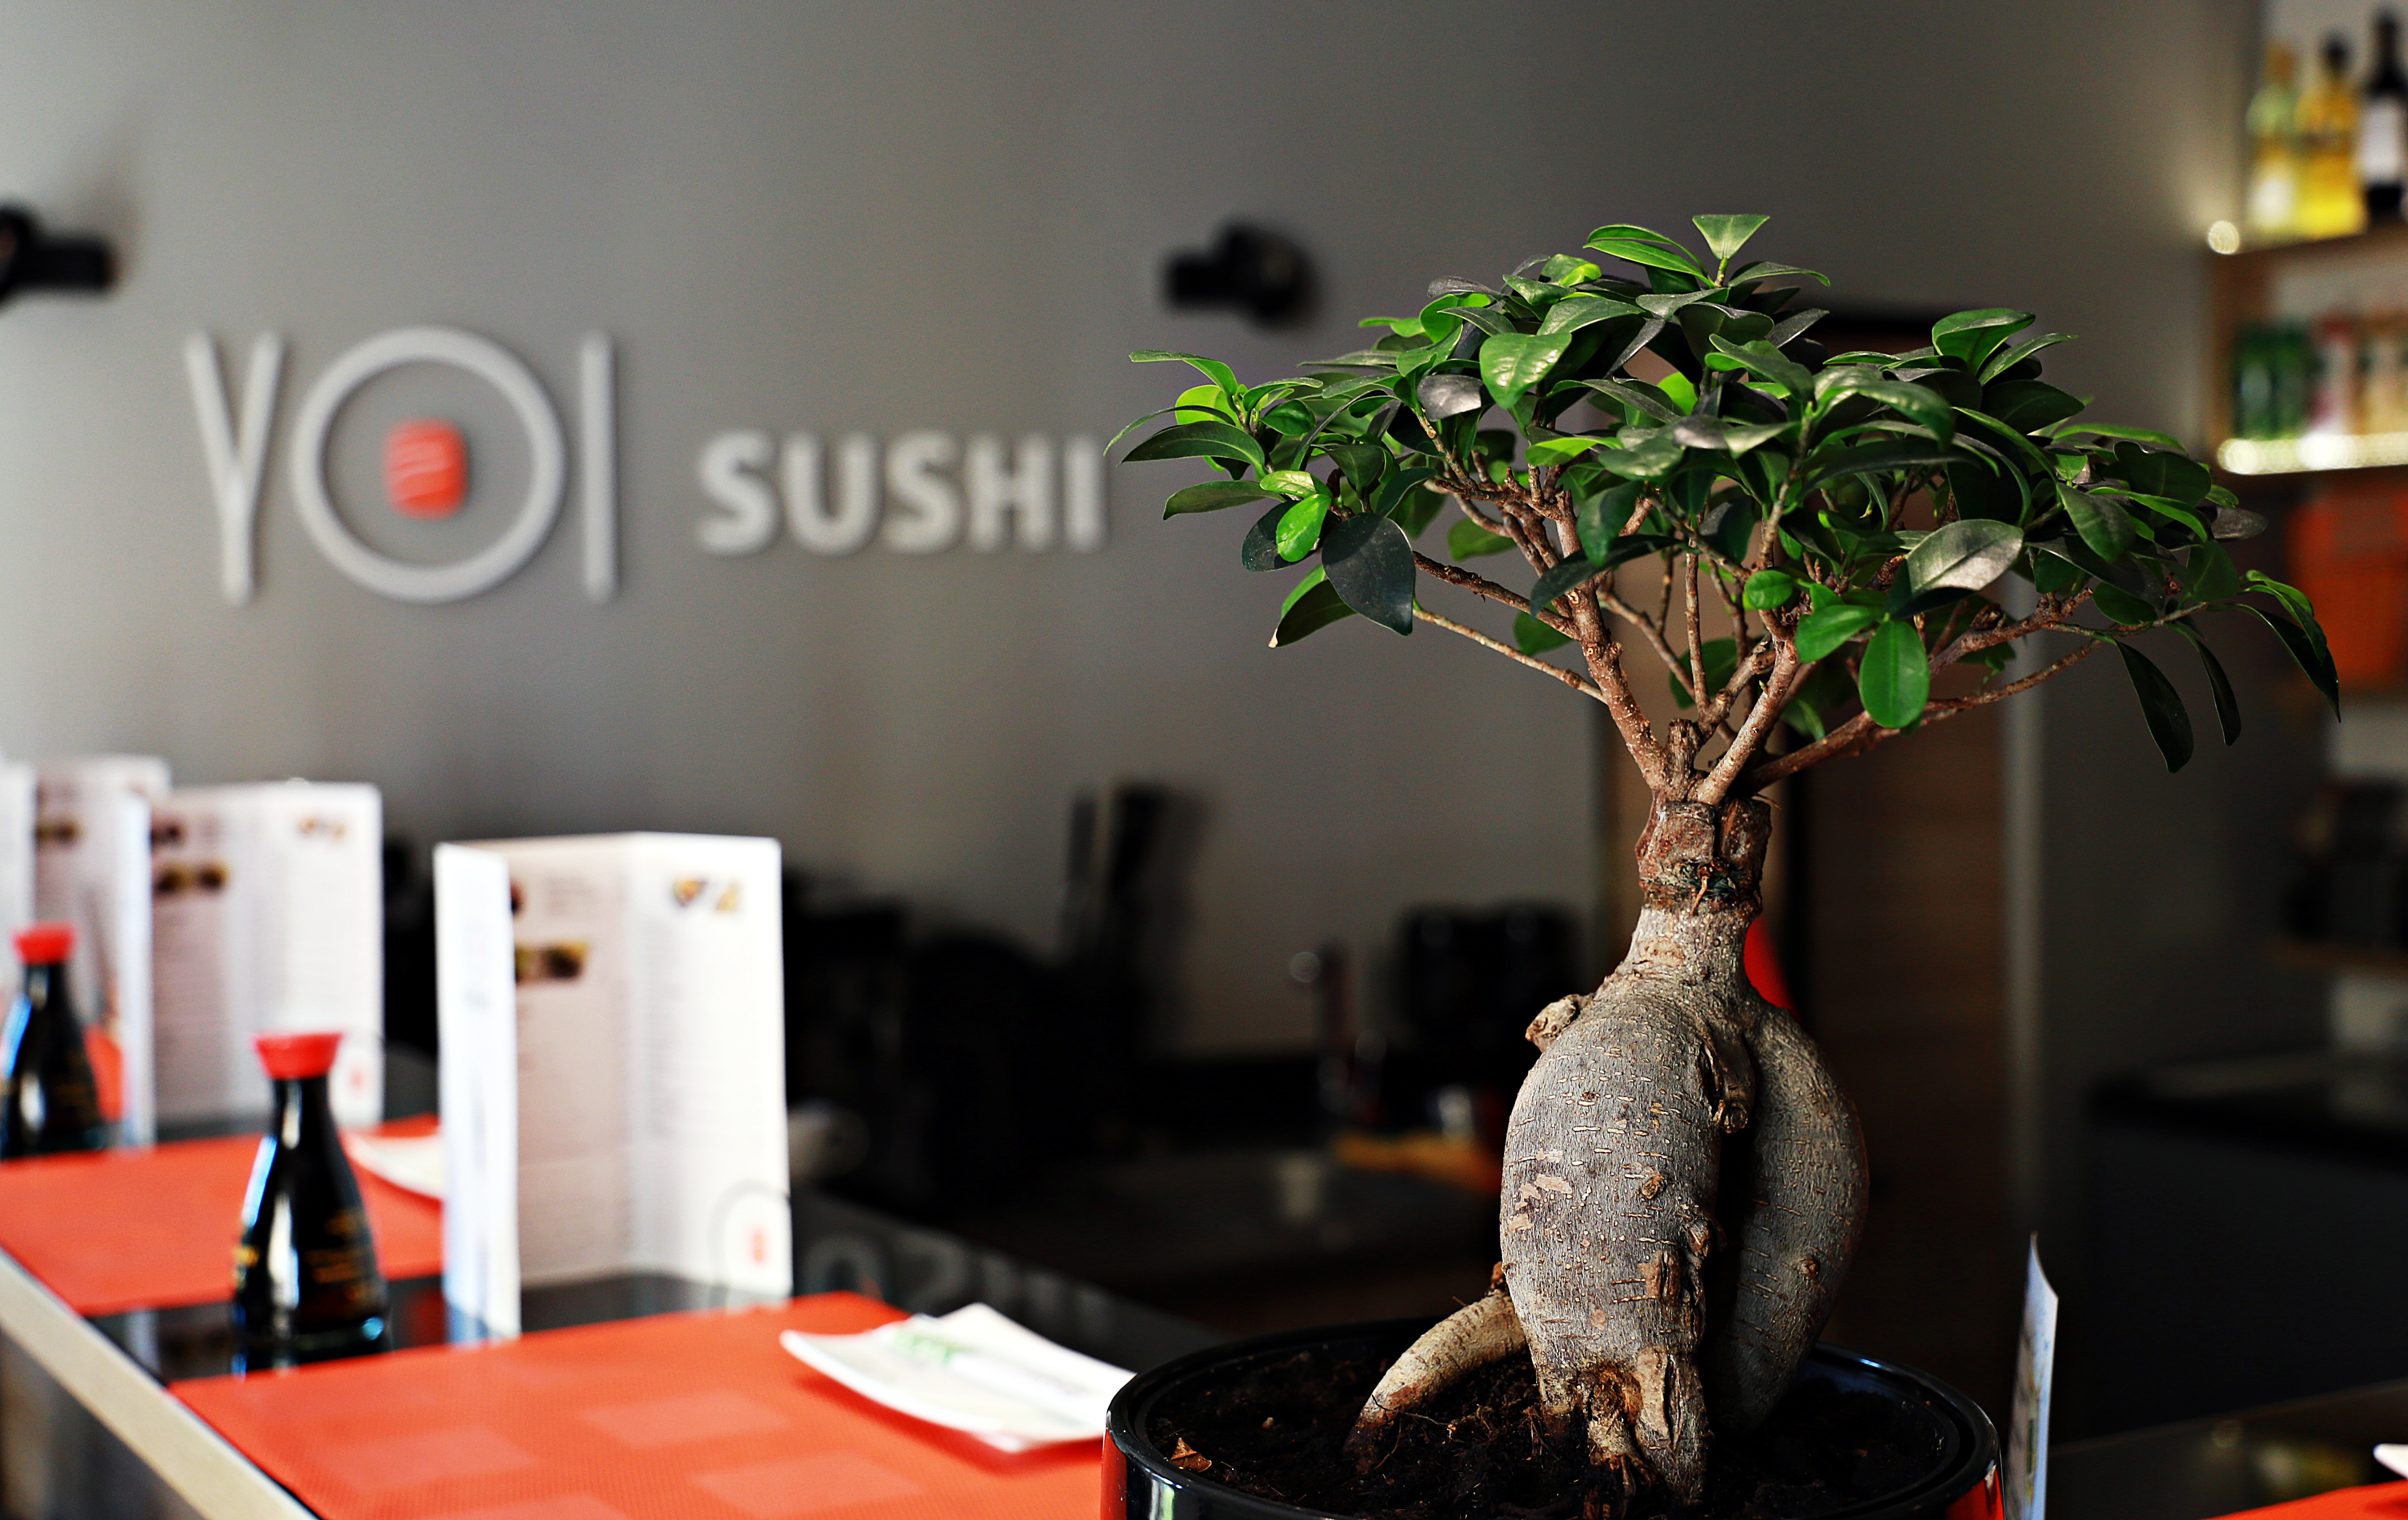 Restauracja Yoi Sushi Olsztyn - Wesołego Alleluja!